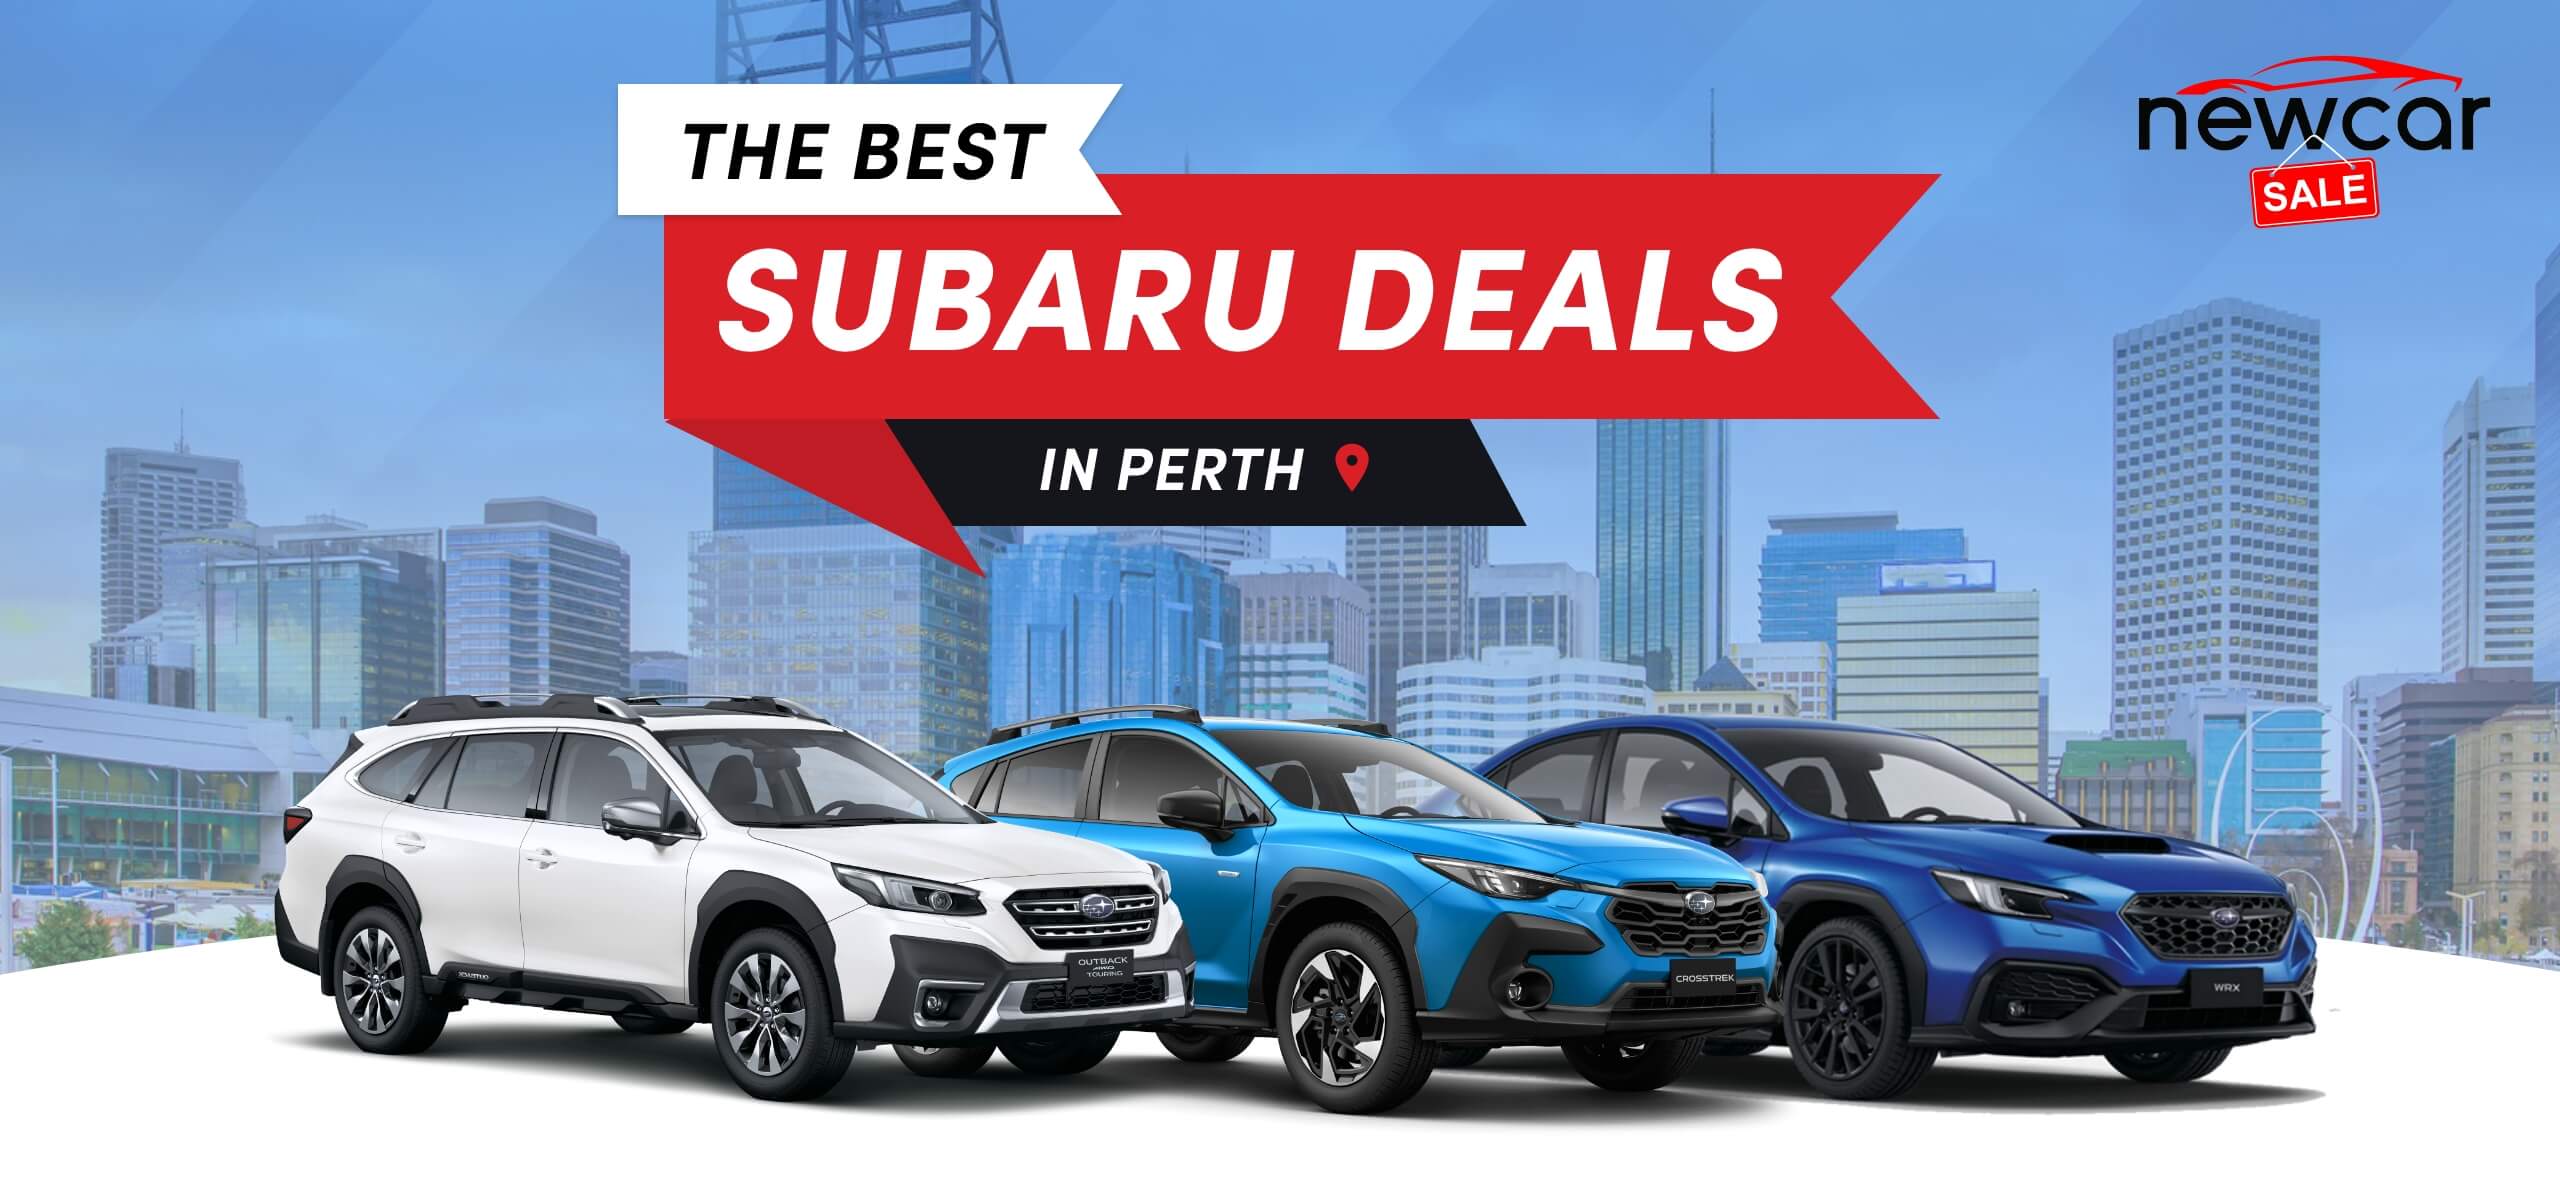 The Best Subaru Deals in Perth